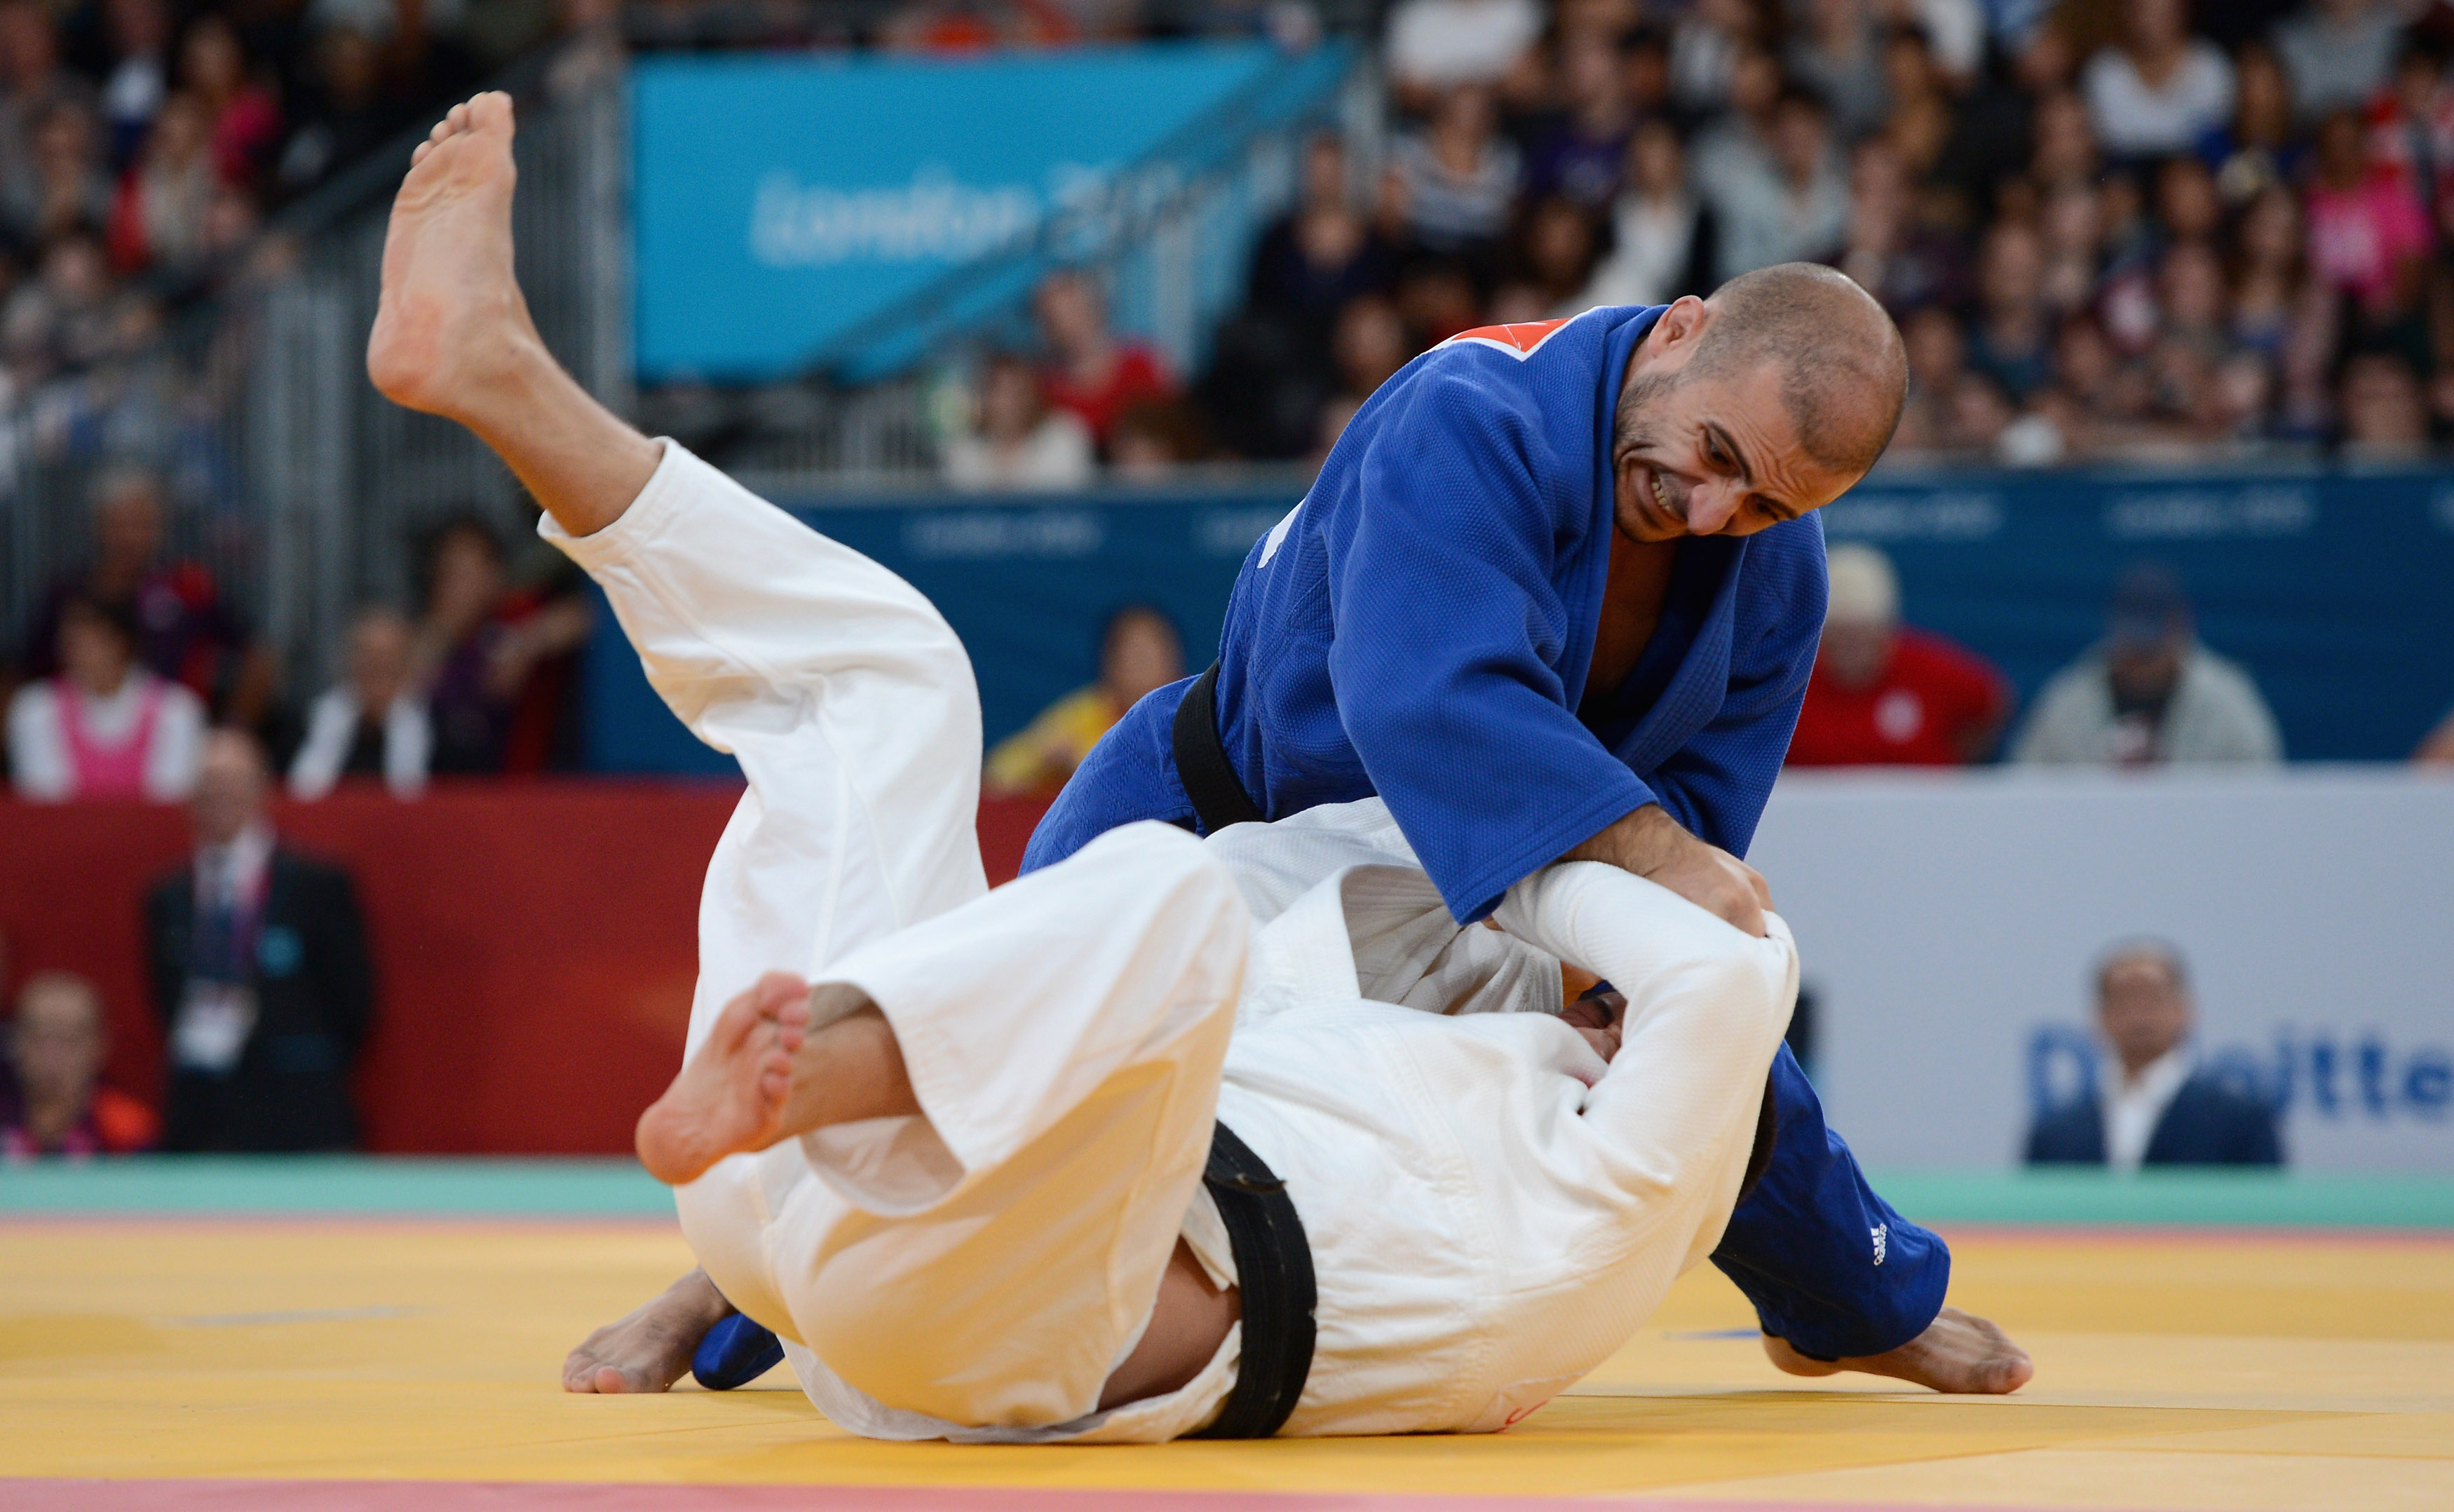 opening-day-shock-in-judo-euros